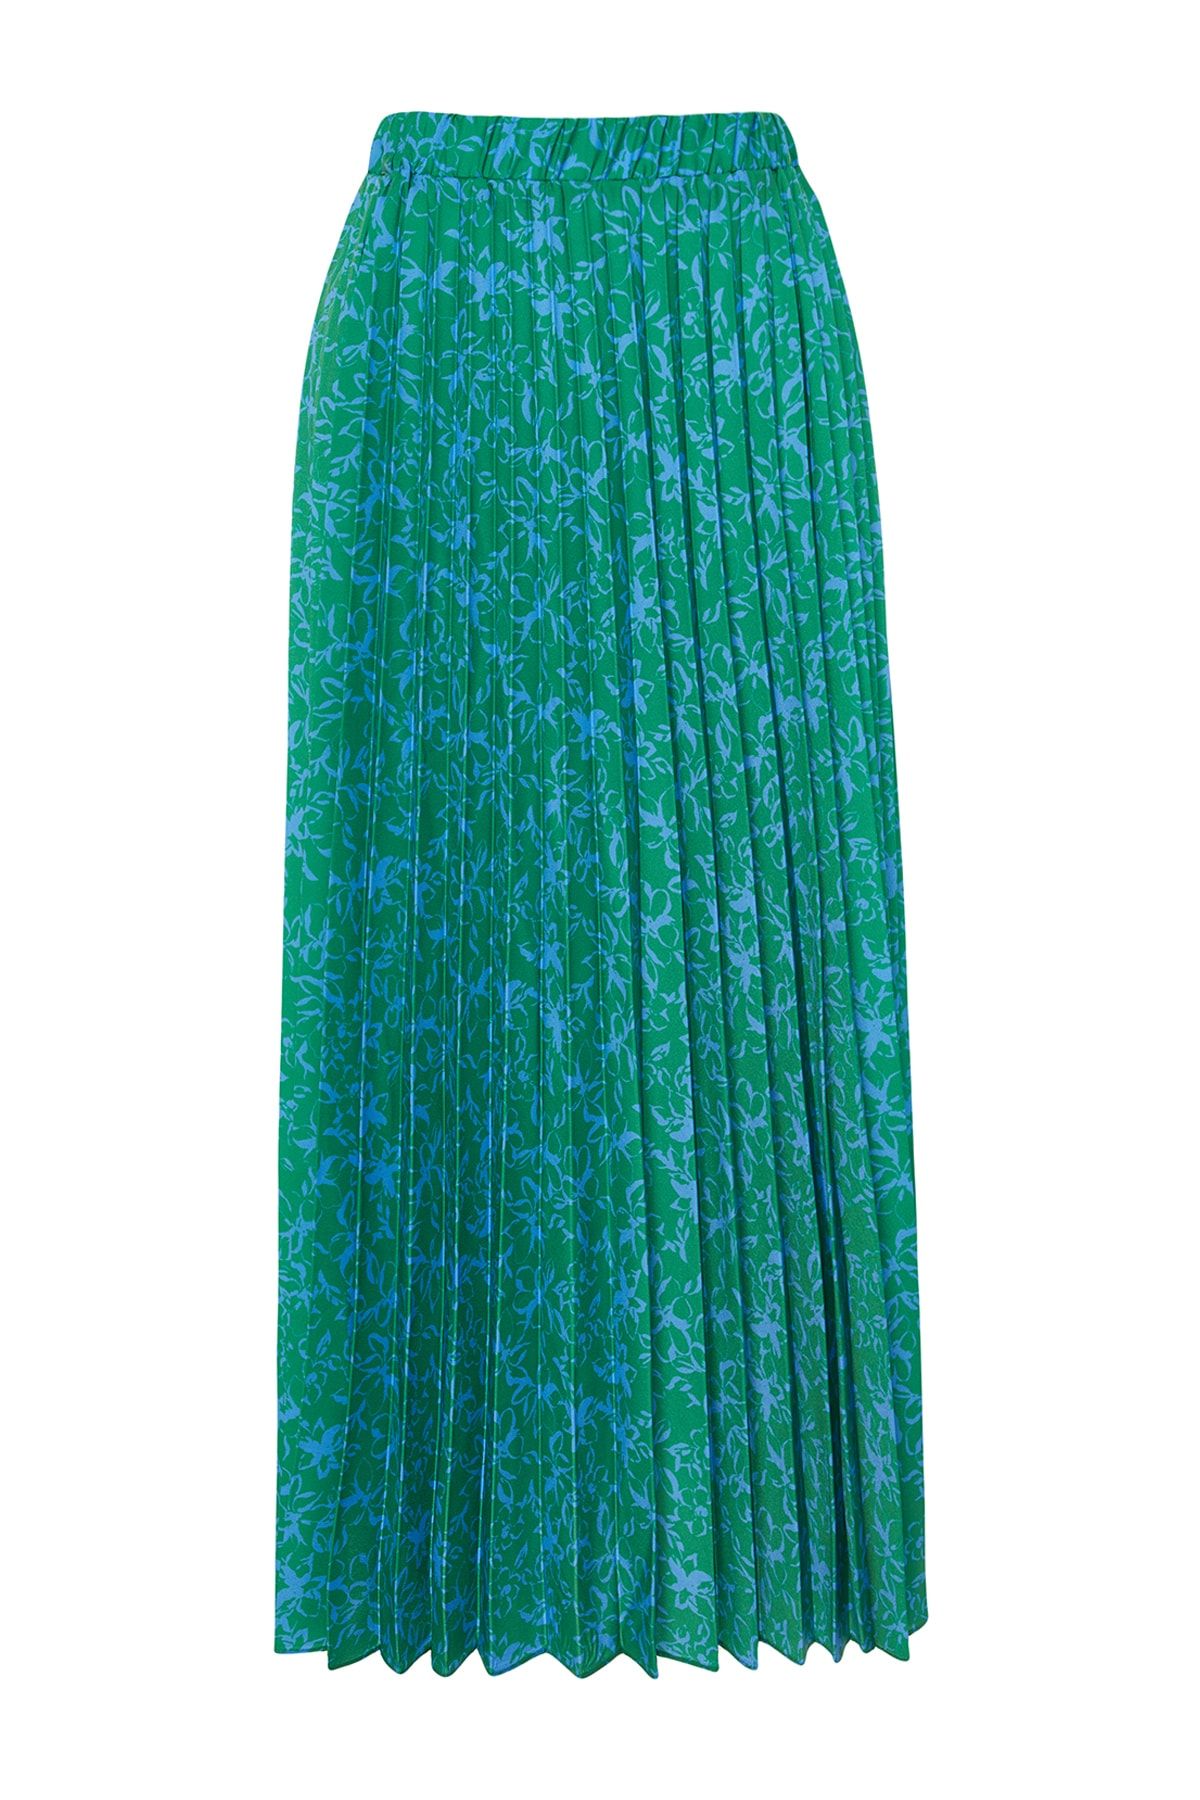 TRENDYOL MODEST Skirt - Green - Maxi - Trendyol